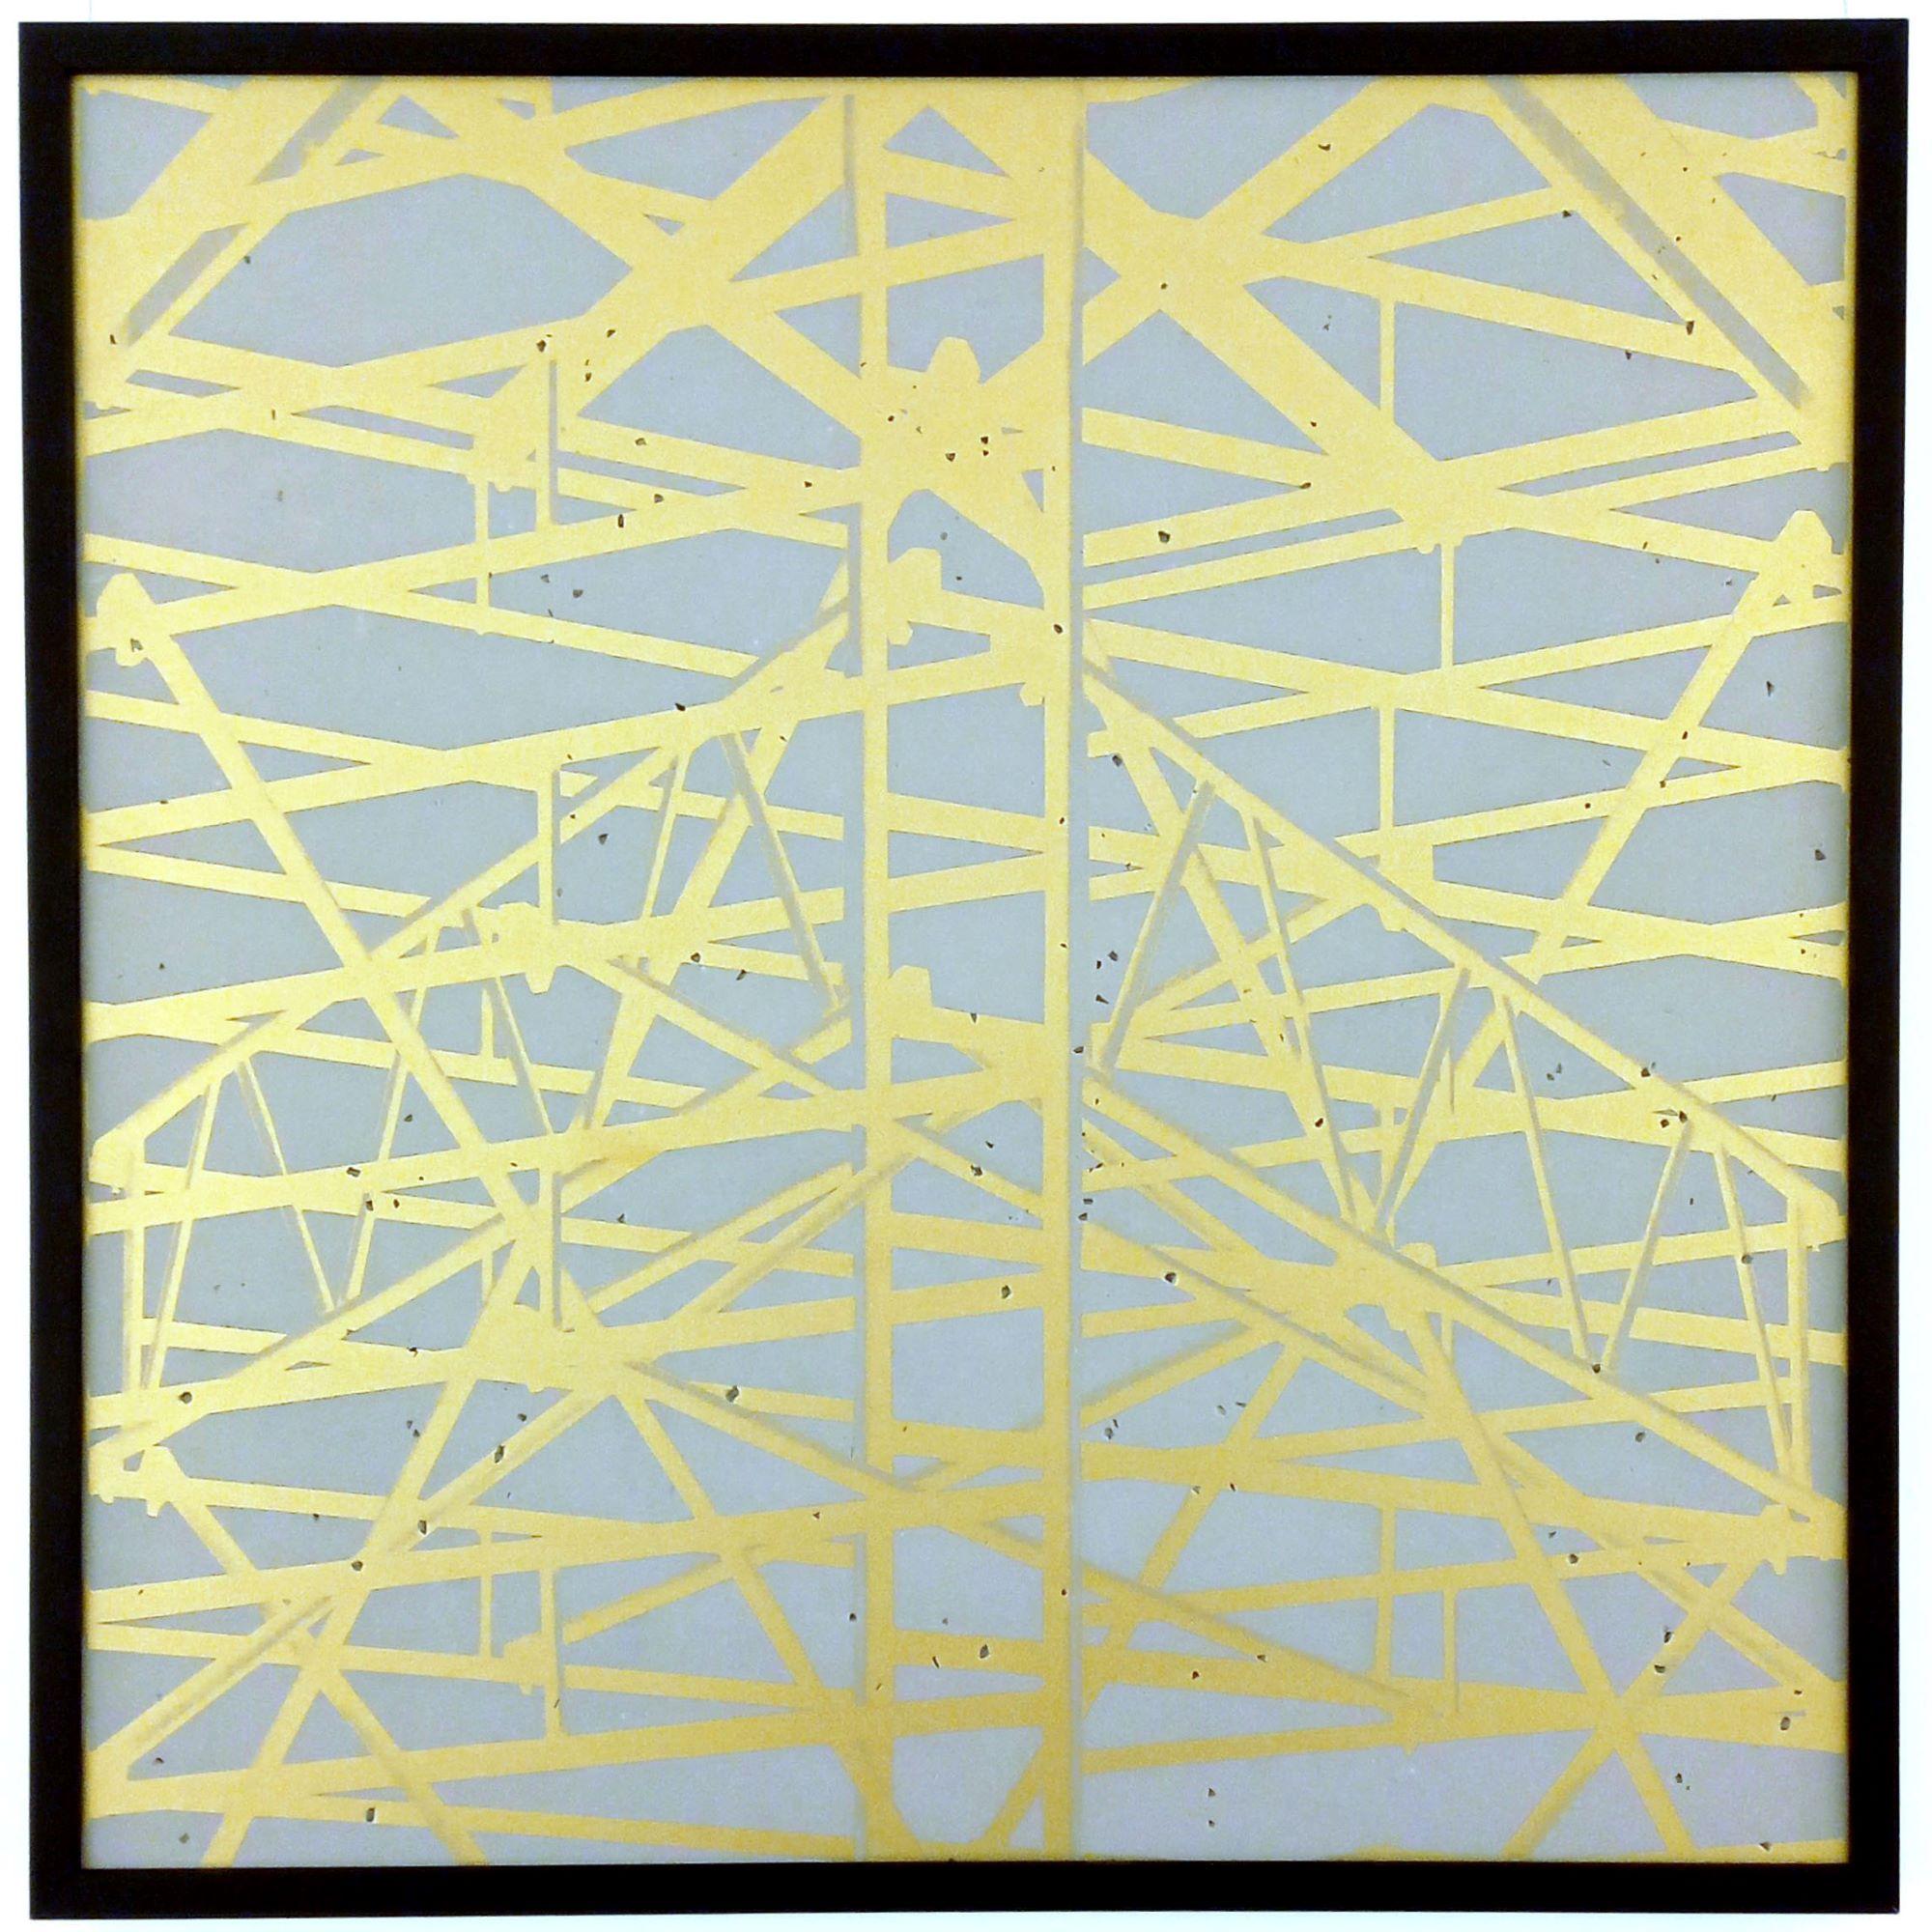 Concrete Scaffolding 02 ist eine limitierte Auflage der Fotografie des zeitgenössischen Künstlers Bruno Fontana. Dieses Foto ist ein Siebdruck mit Goldfarbe auf Betonsteinzeug. Die Abmessungen sind 60 x 60 cm (23,6 × 23,6 Zoll). Das Kunstwerk wird